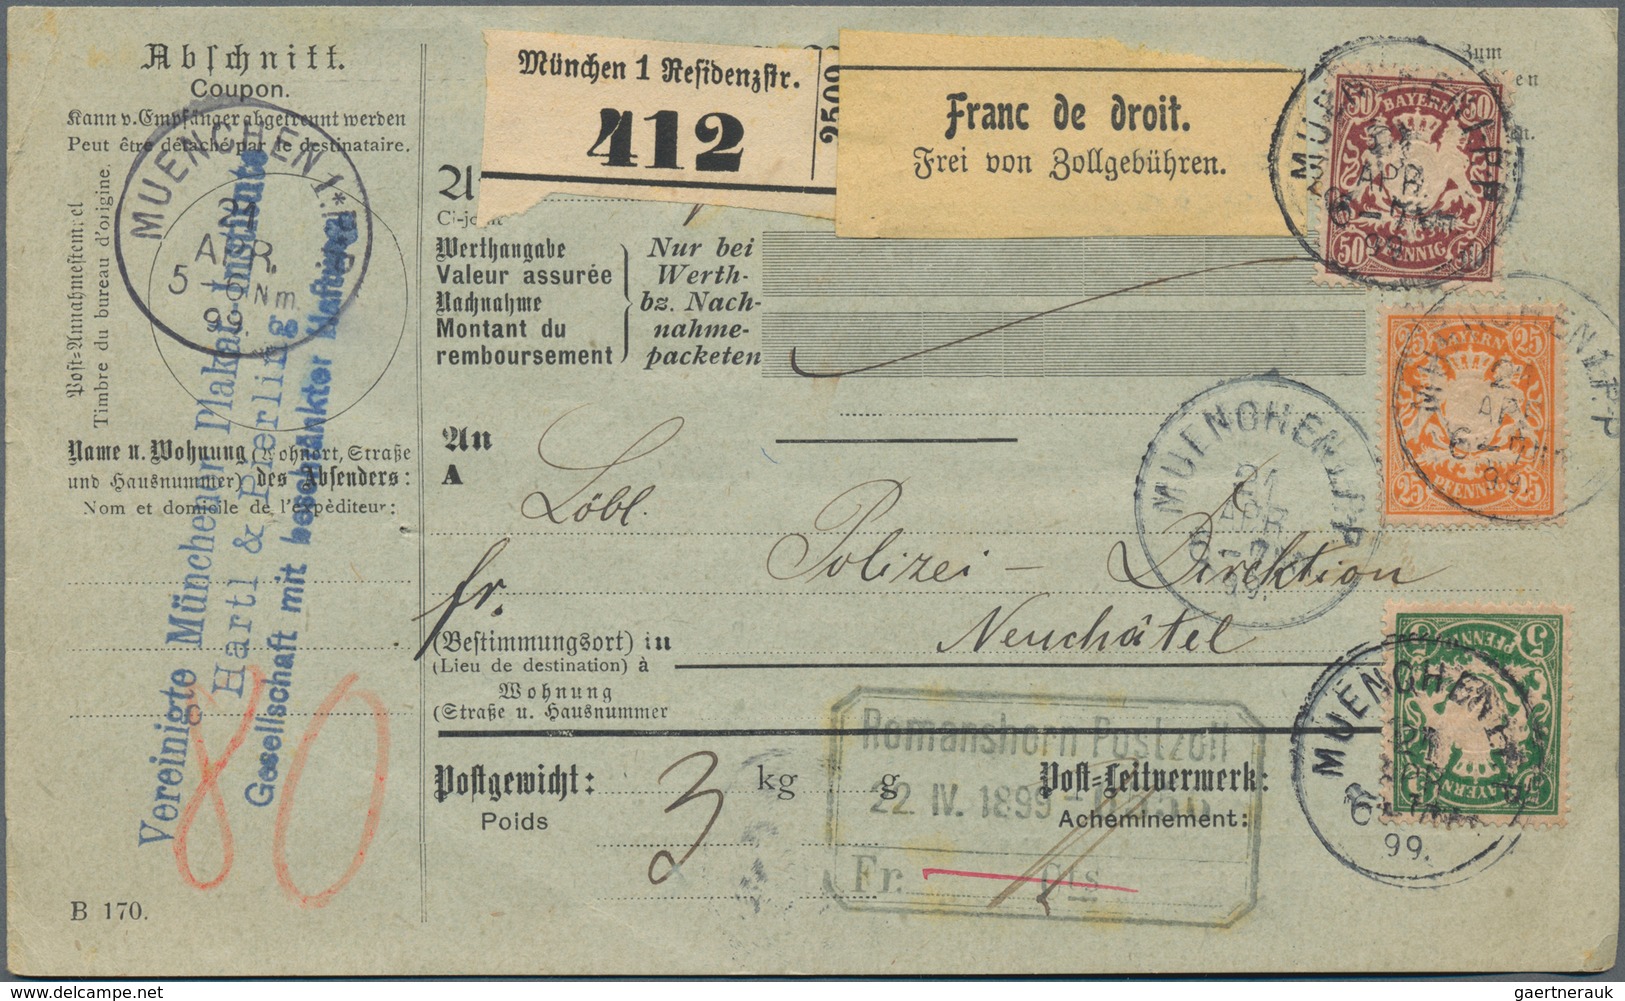 Bayern - Marken und Briefe: 1876-1920 inkl. Porto und Dienst, tolle Sammlung von ca. 620 Belegen mit